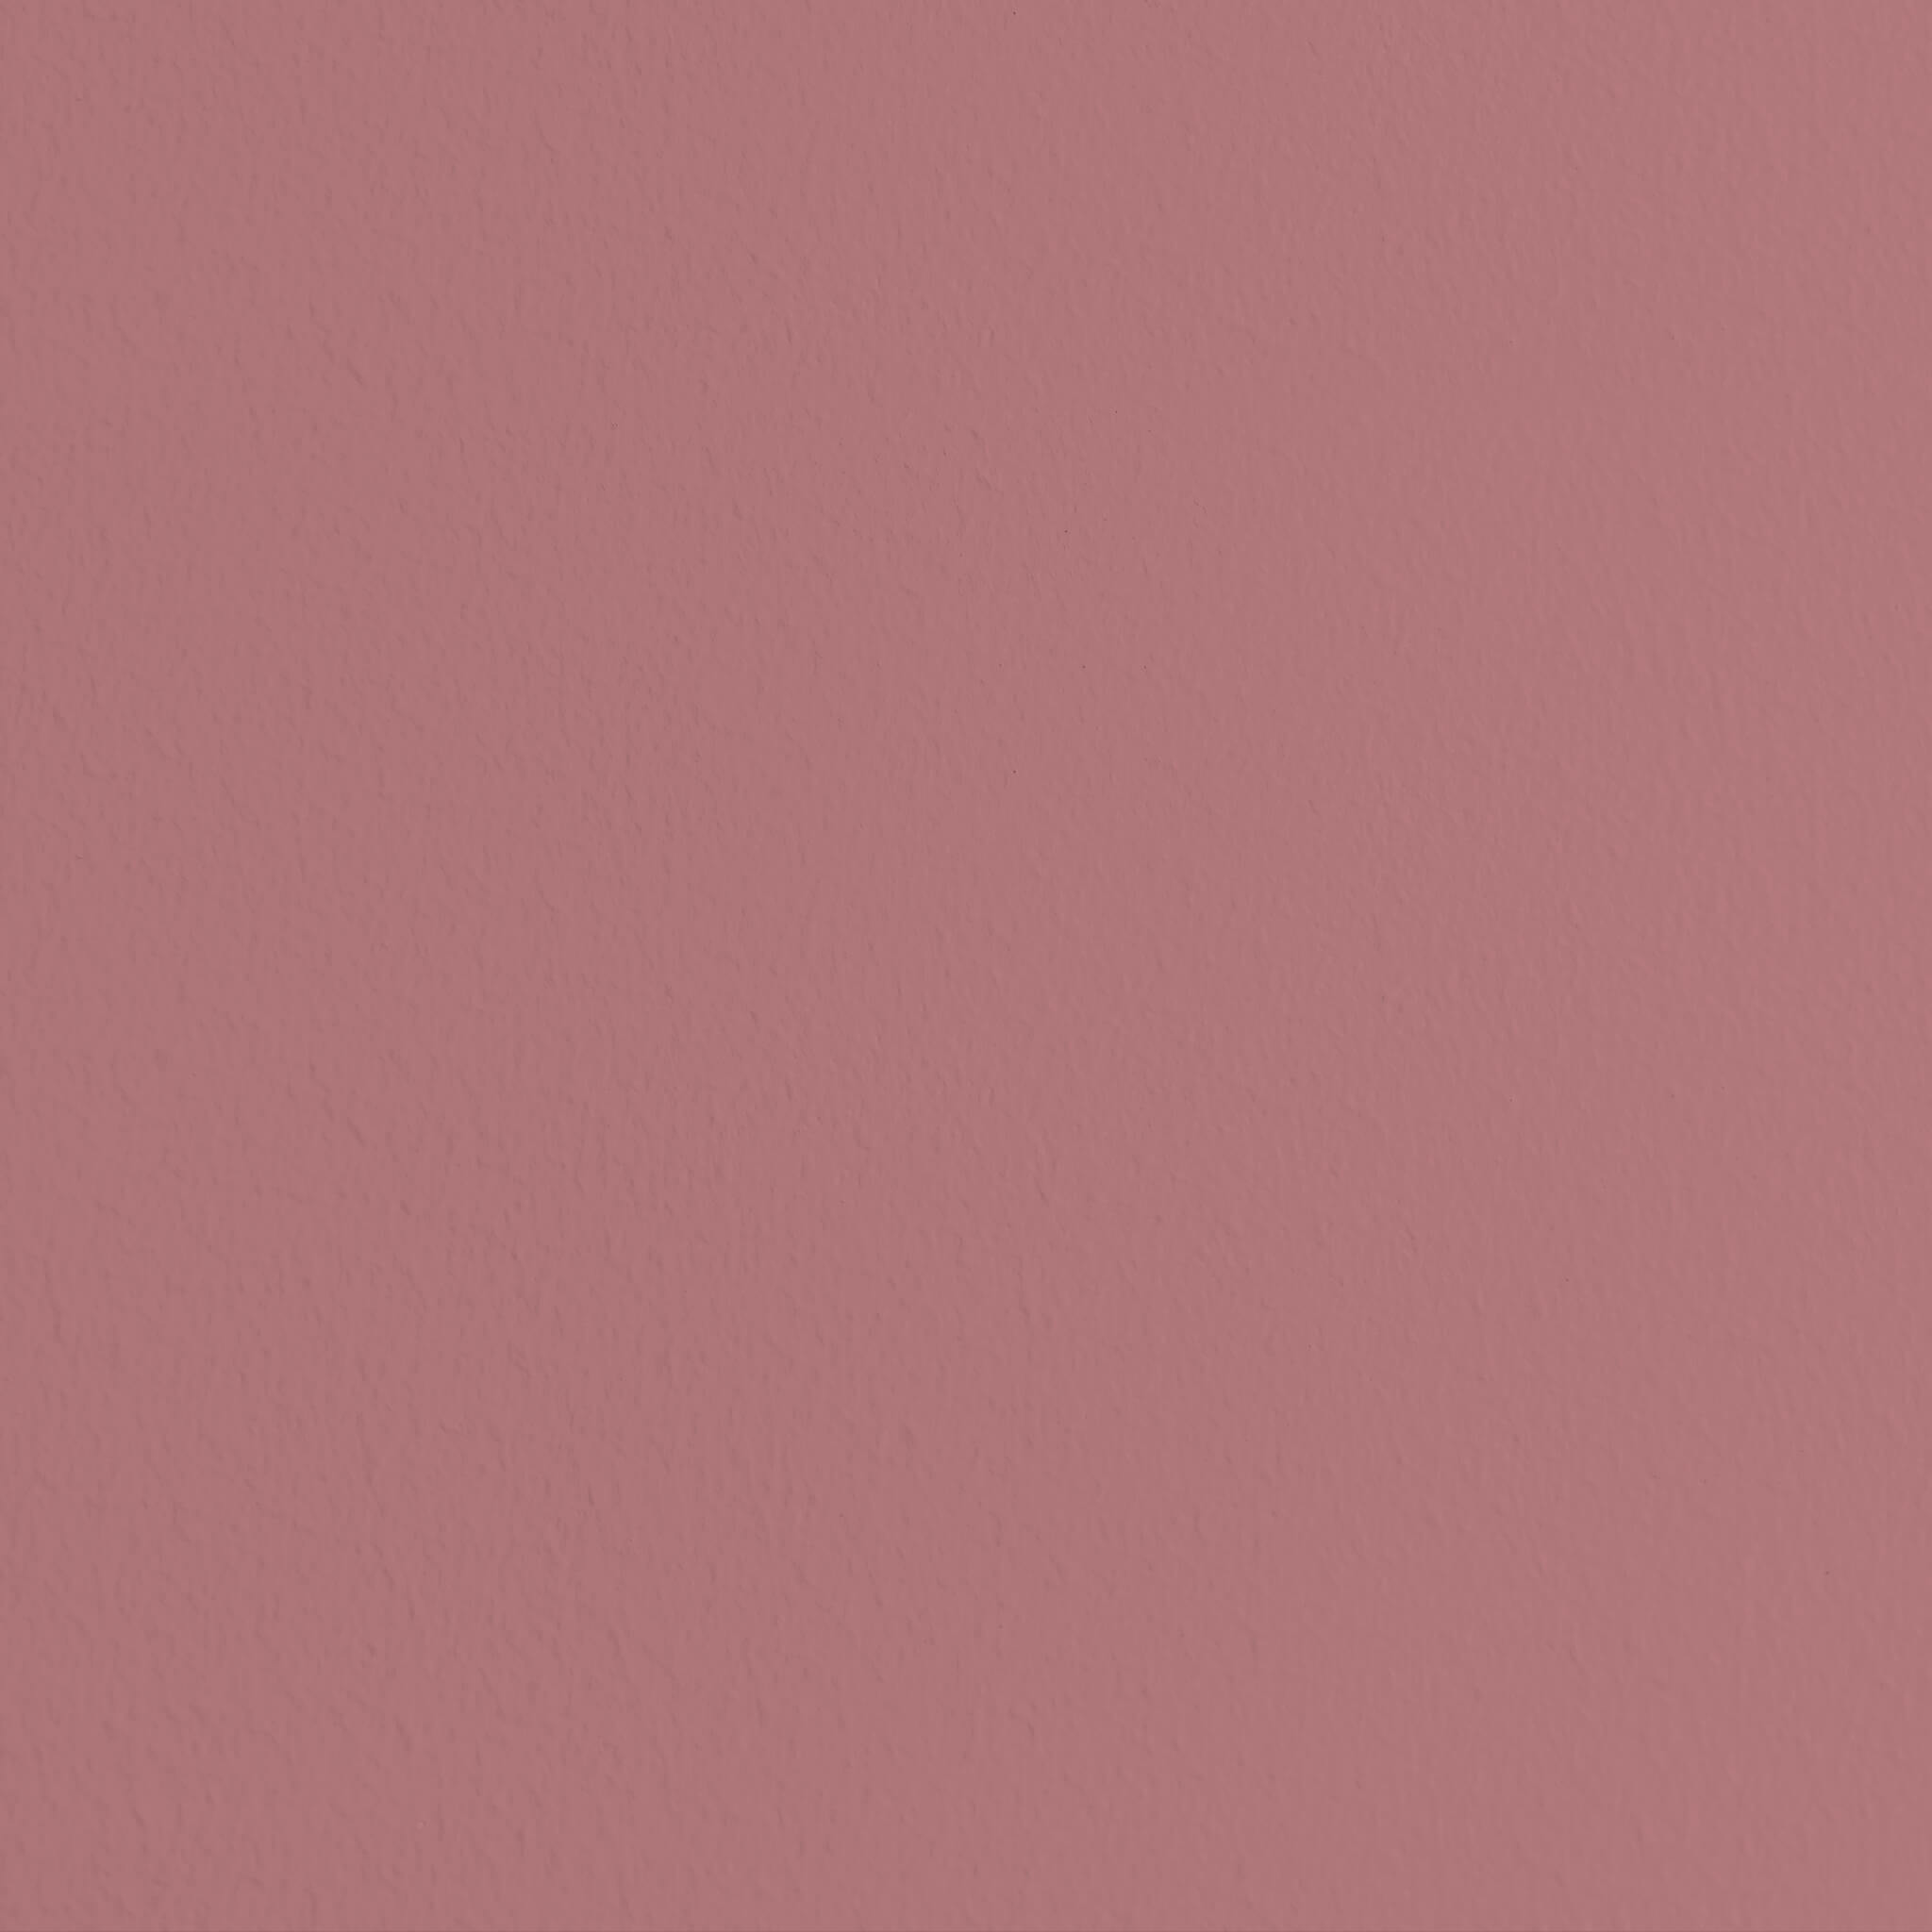 MissPompadour Pink mit Grau - Die Nützliche 2.5L